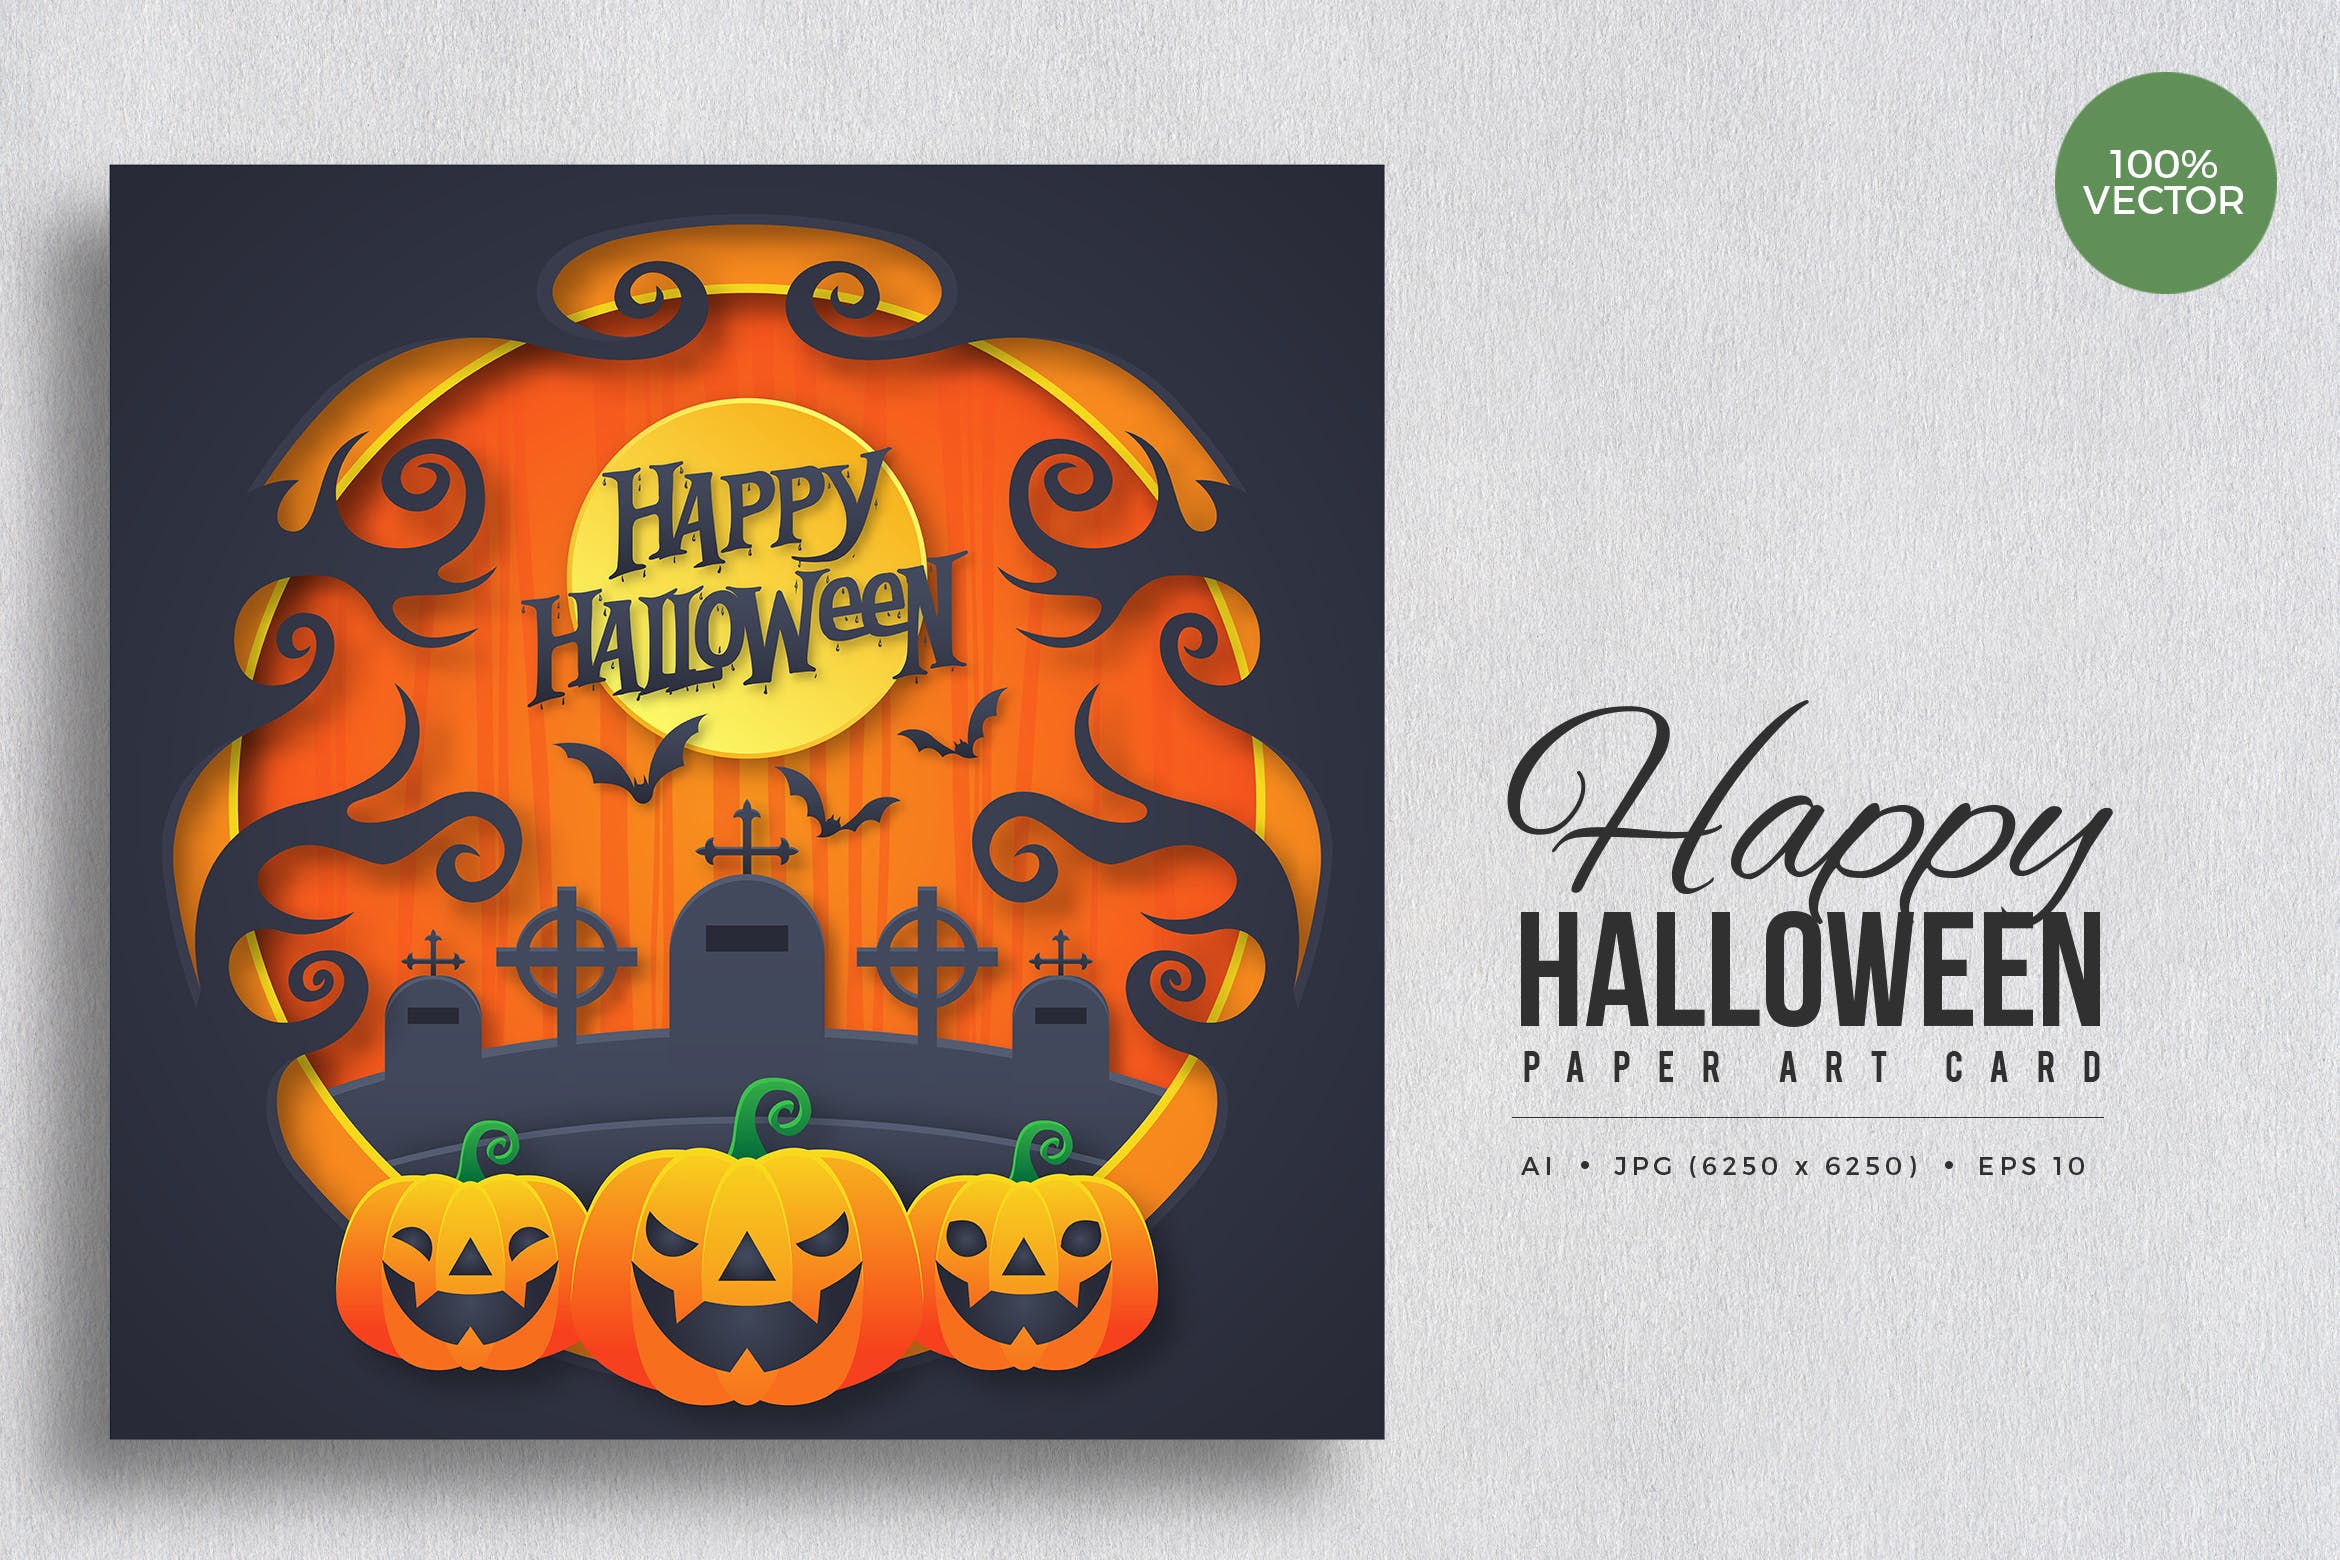 万圣节促销活动卡片设计模板素材v3 Happy Halloween Paper Art Vector Card Vol.5插图